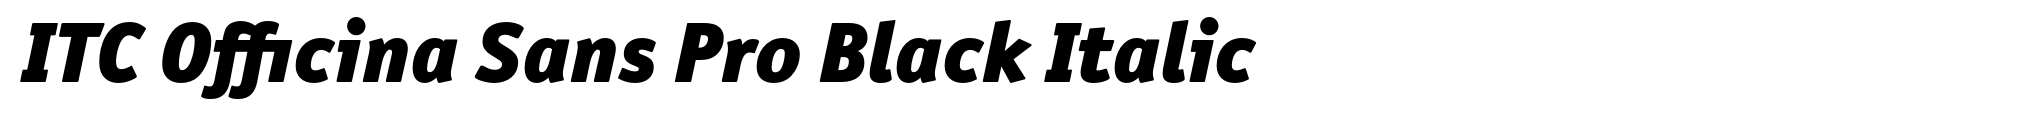 ITC Officina Sans Pro Black Italic image